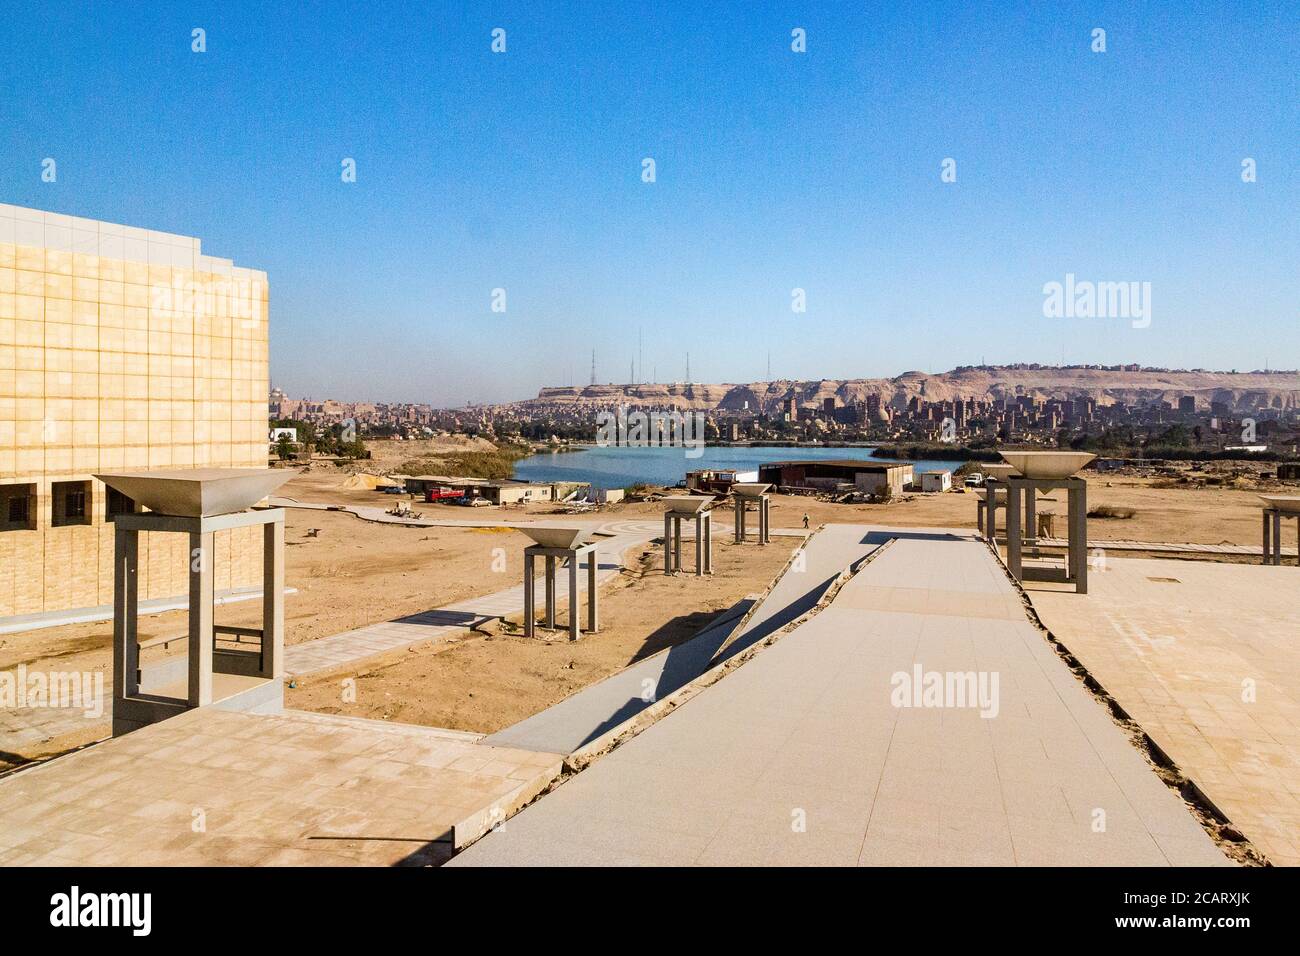 Ägypten, Kairo, das Nationalmuseum der ägyptischen Zivilisation, noch nicht eingeweiht, im Dezember 2015 : Blick auf den See und den Mokattam Hügel. Stockfoto